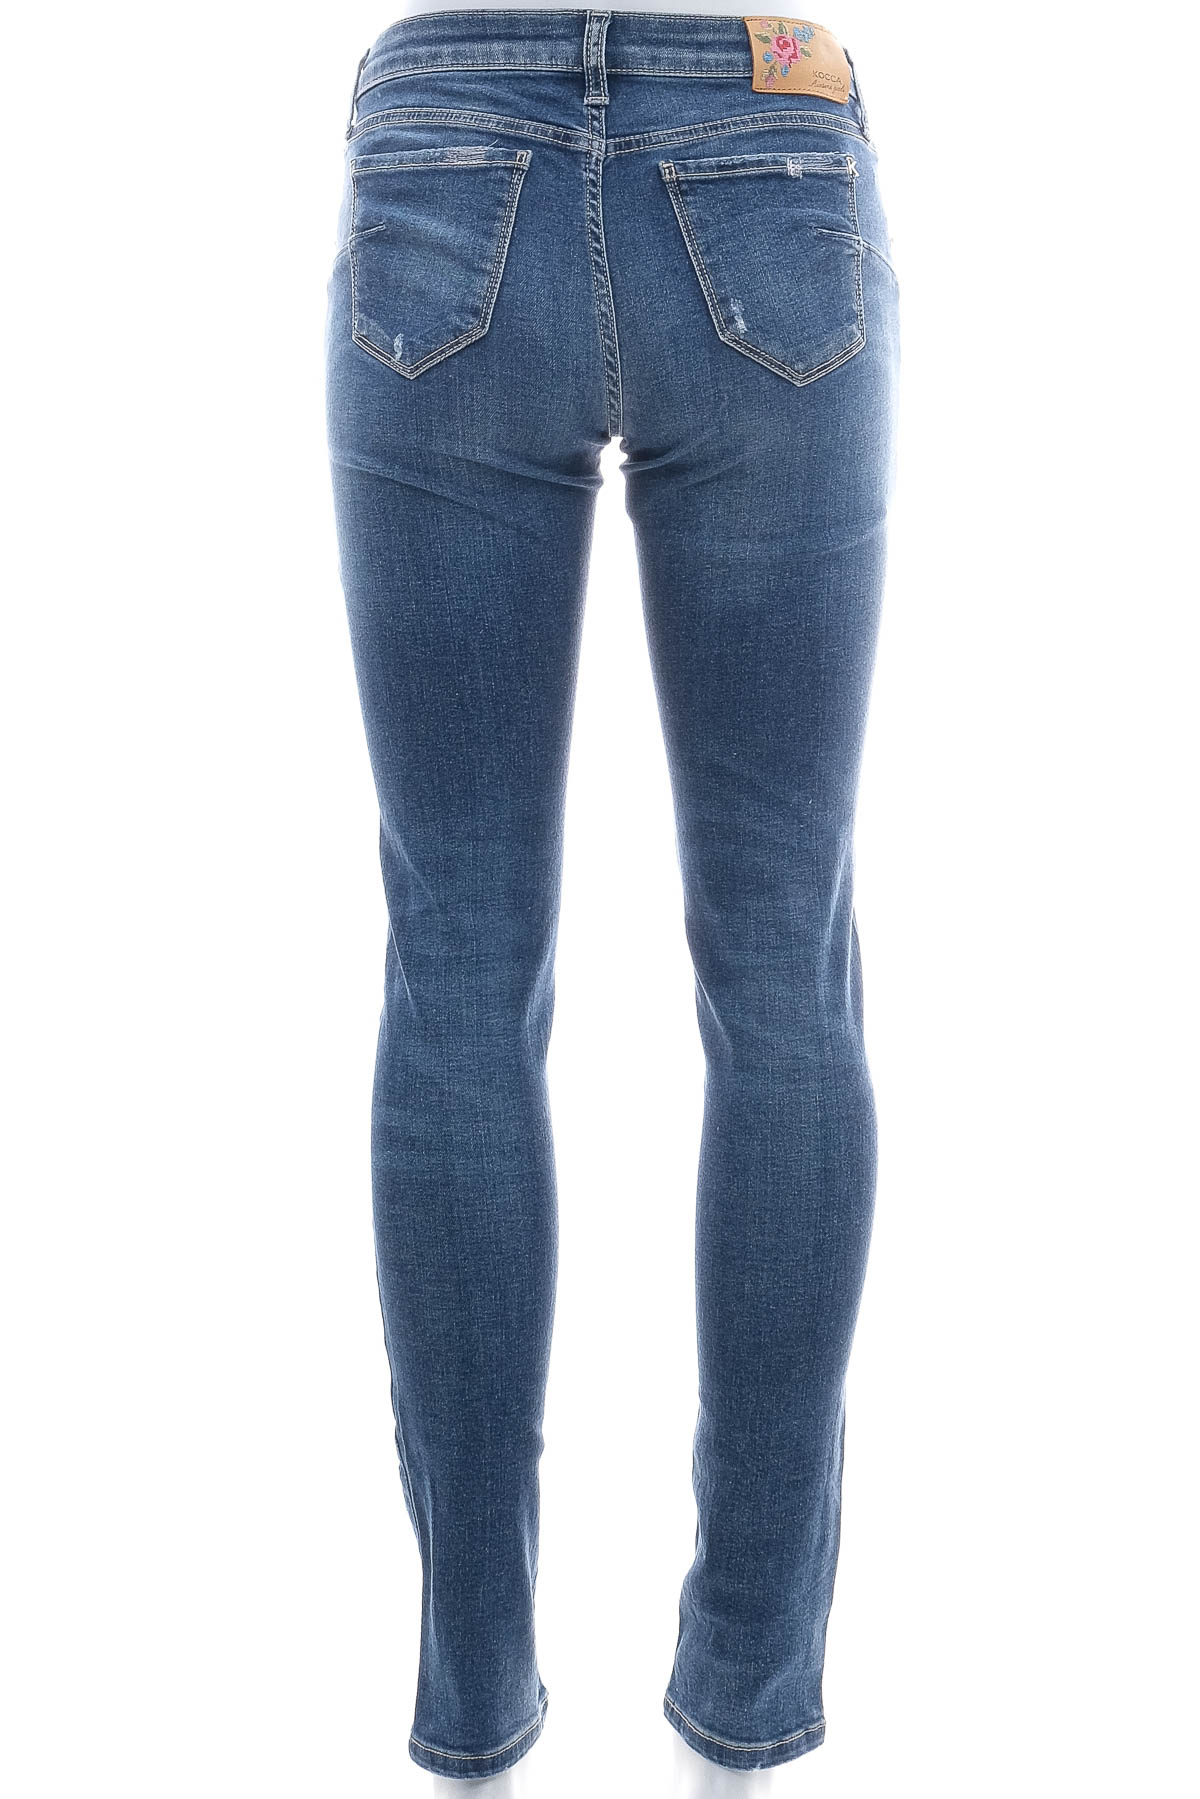 Women's jeans - Kocca - 1